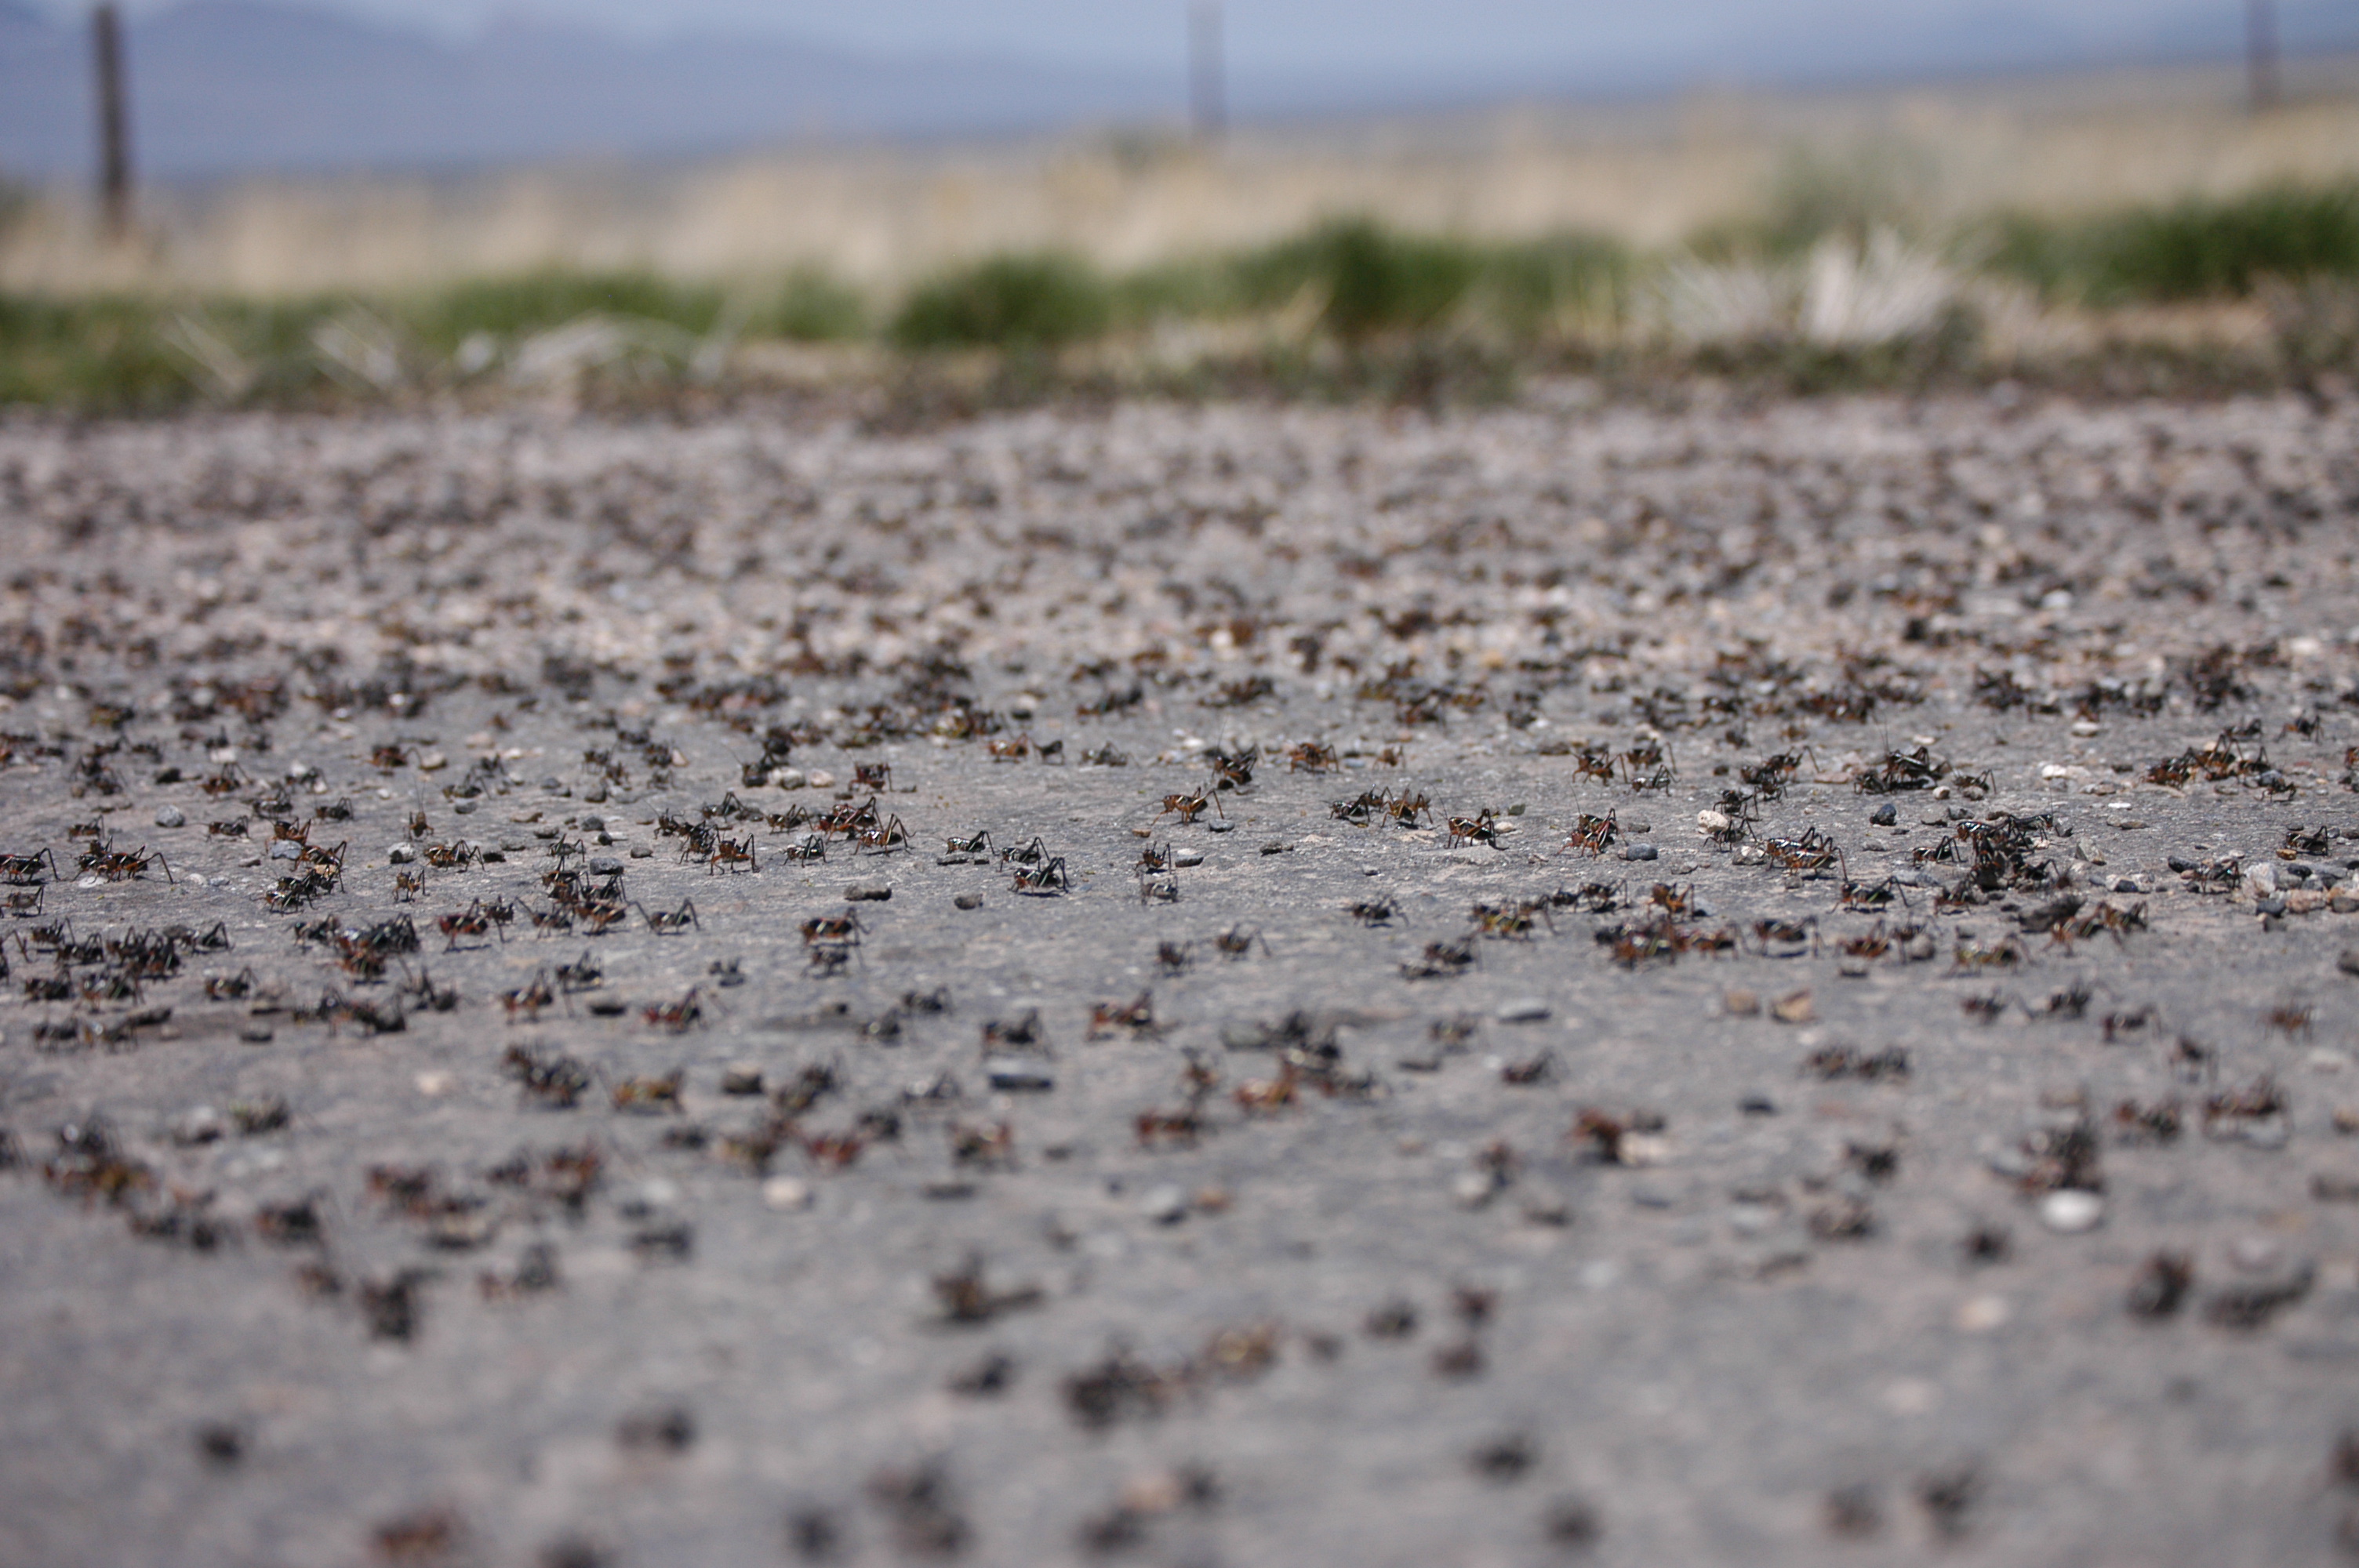 Crickets swarming a road.